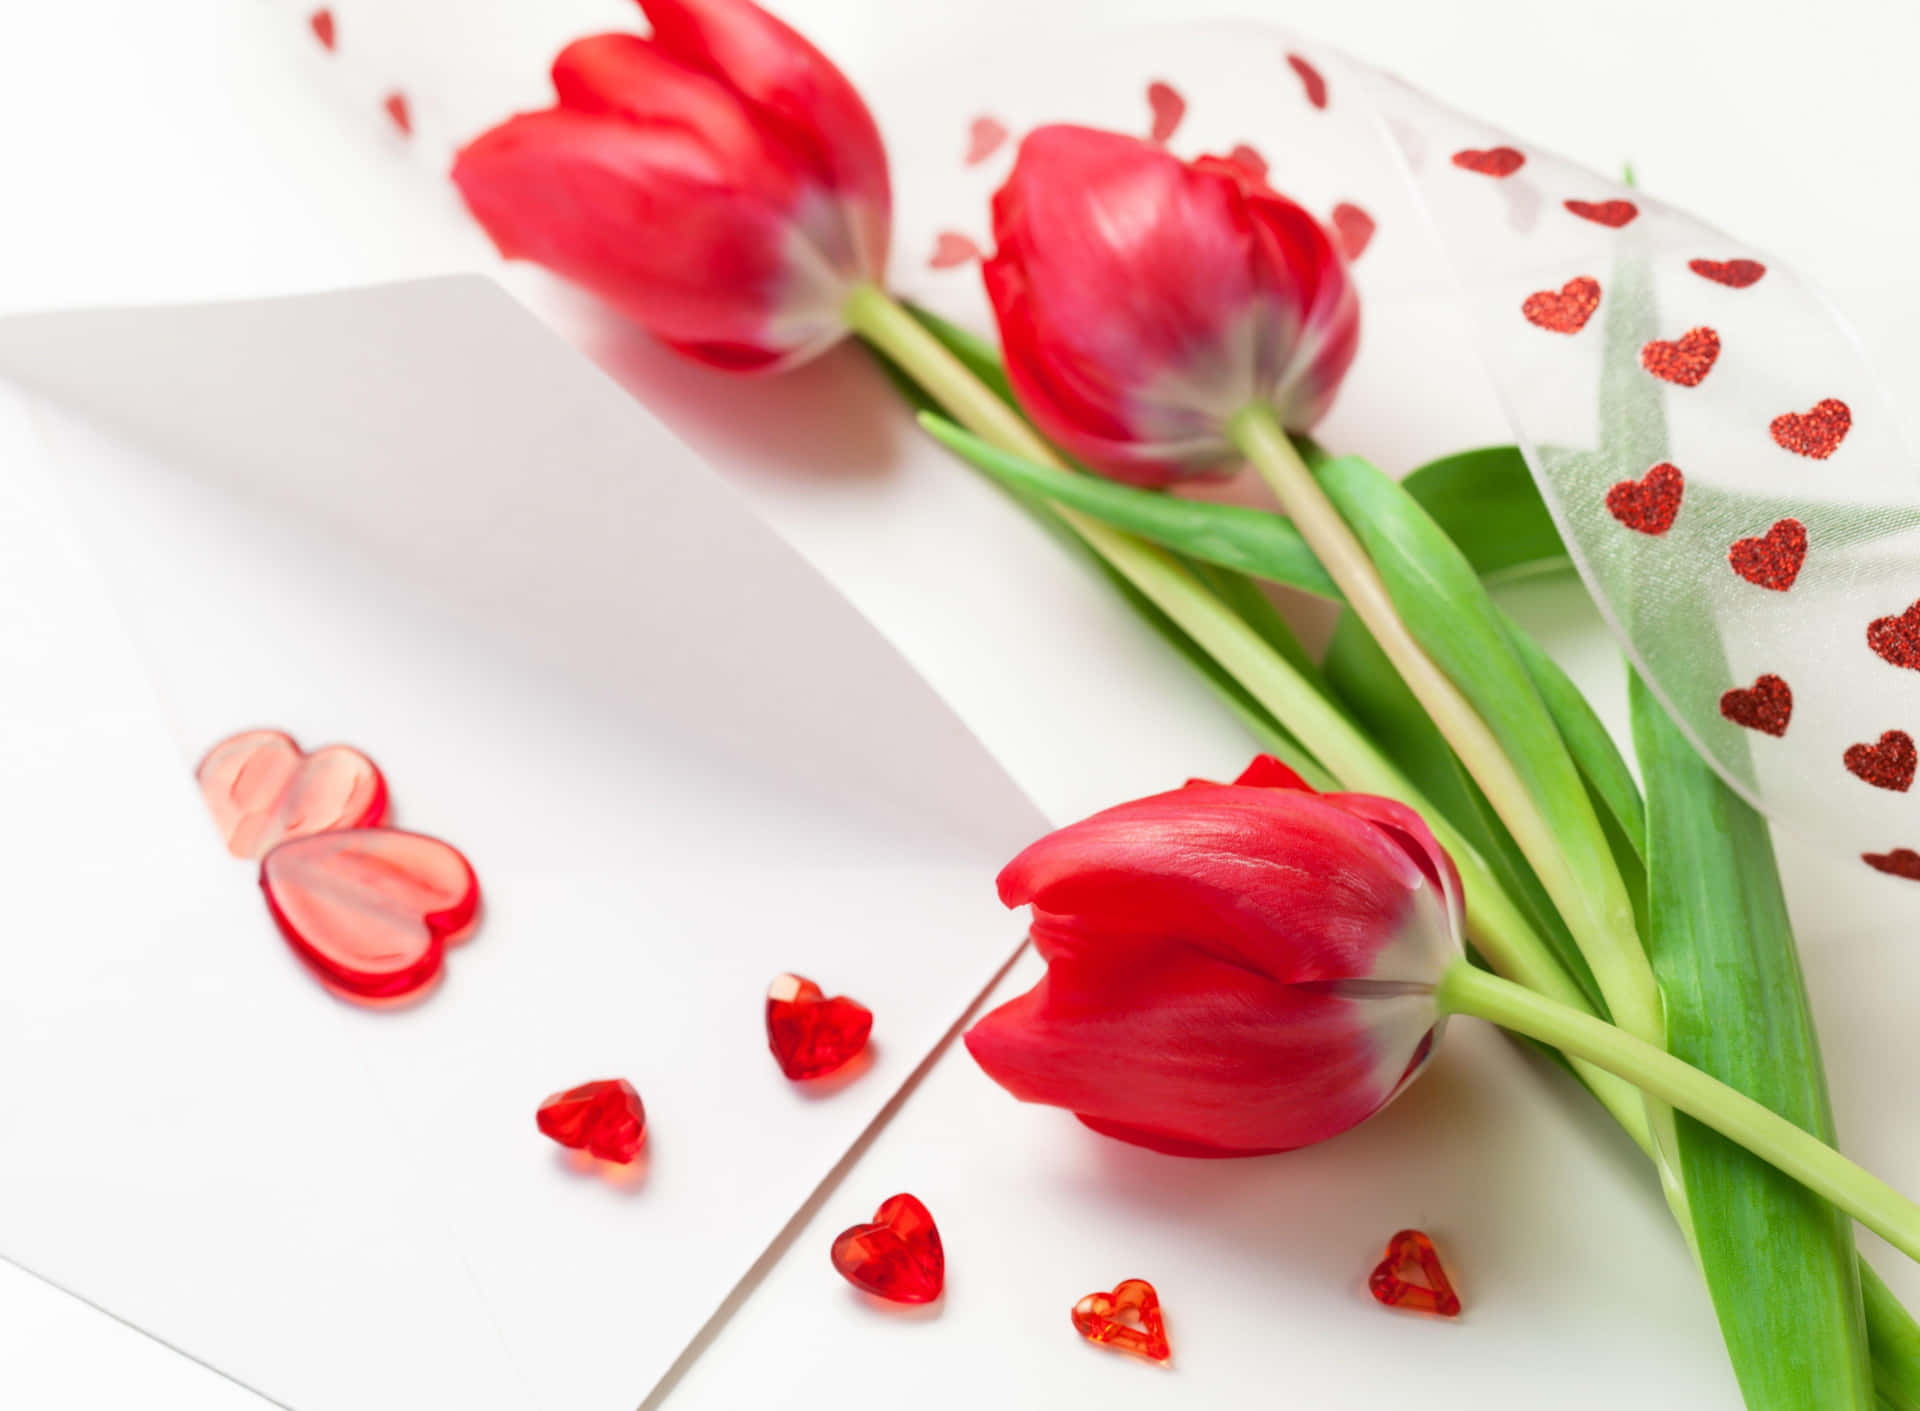 Imagende Flores Rojas De Tulipanes Amorosos